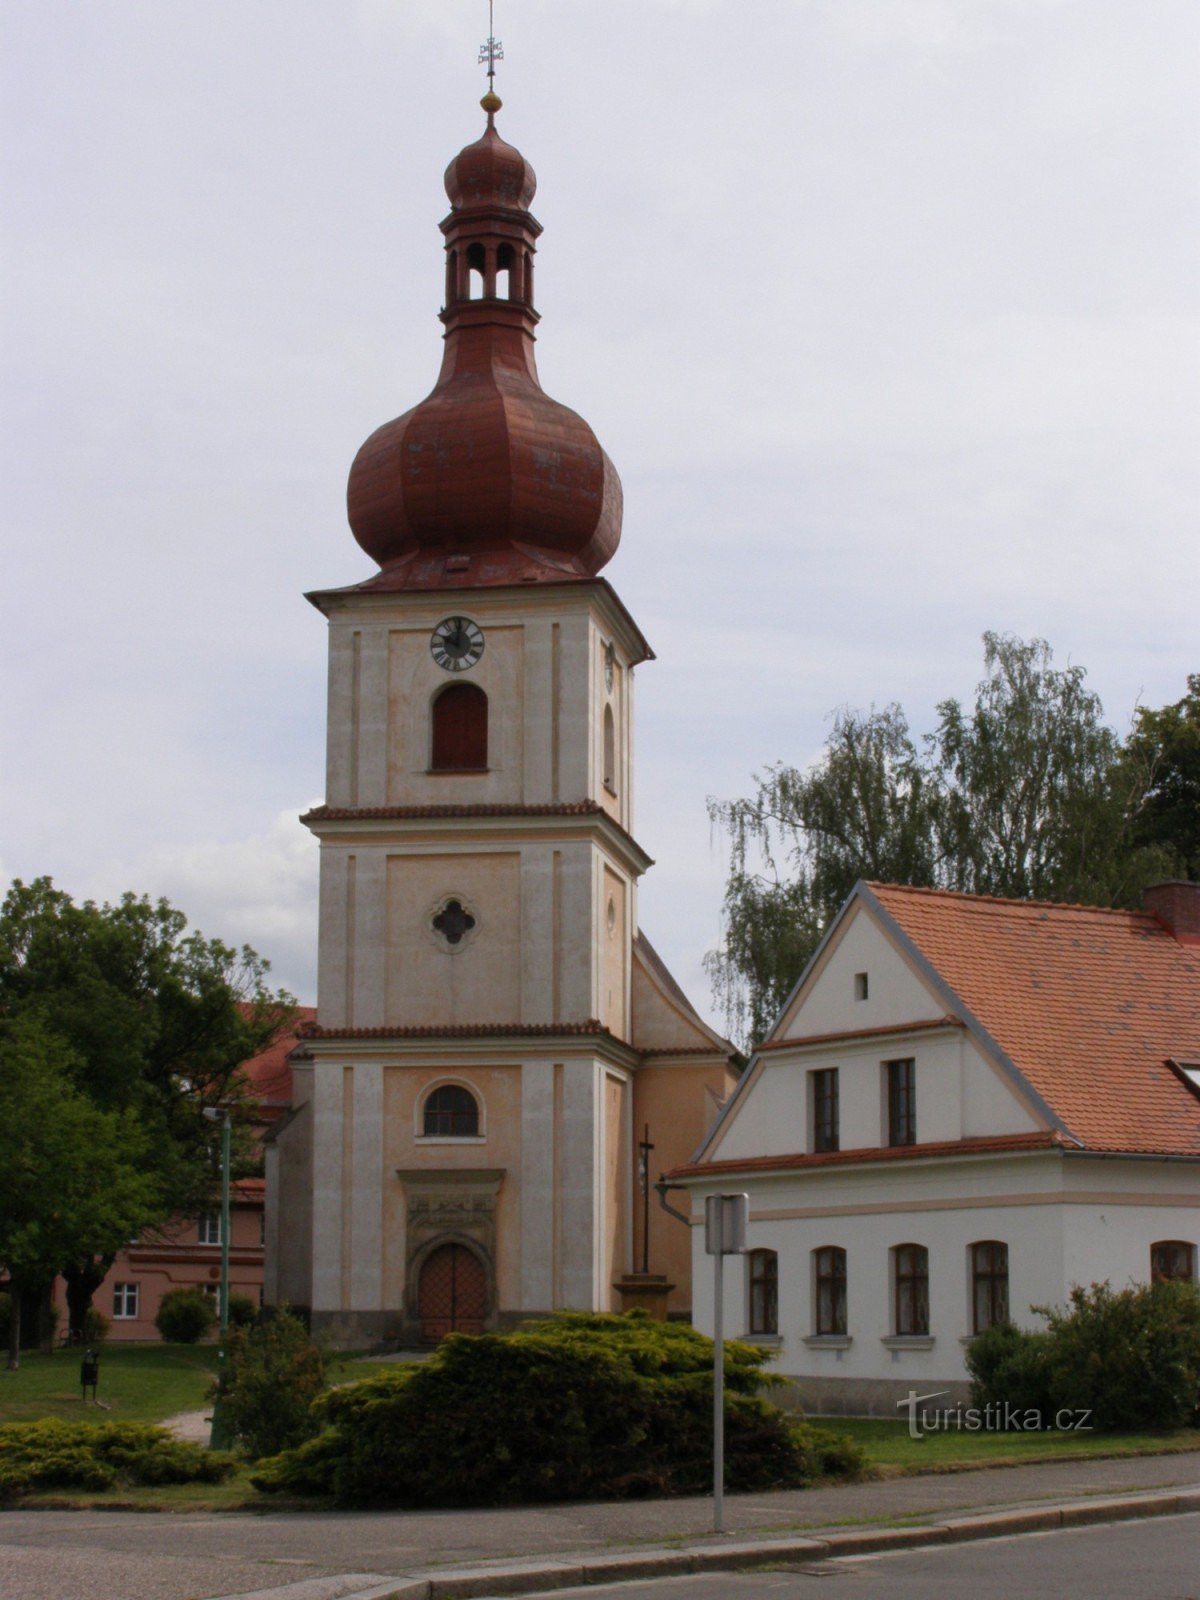 Jaroměř - crkva sv. Jakub